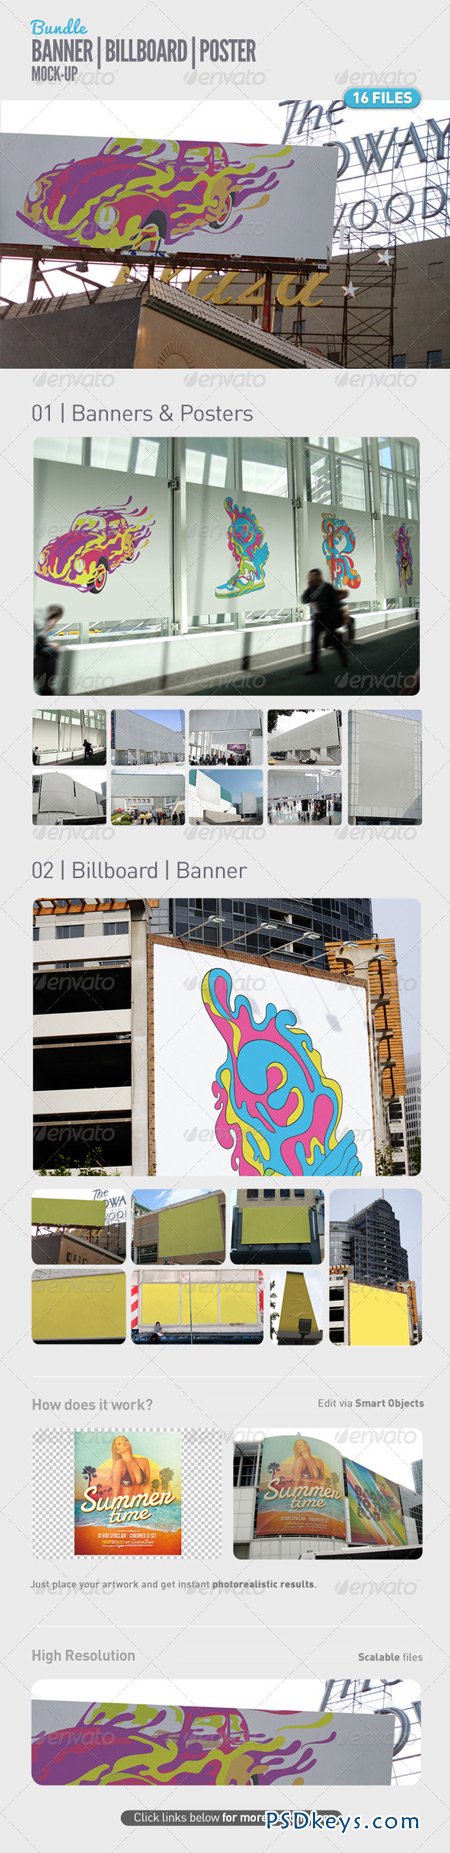 Banner Billboard Poster Bundle 5108338